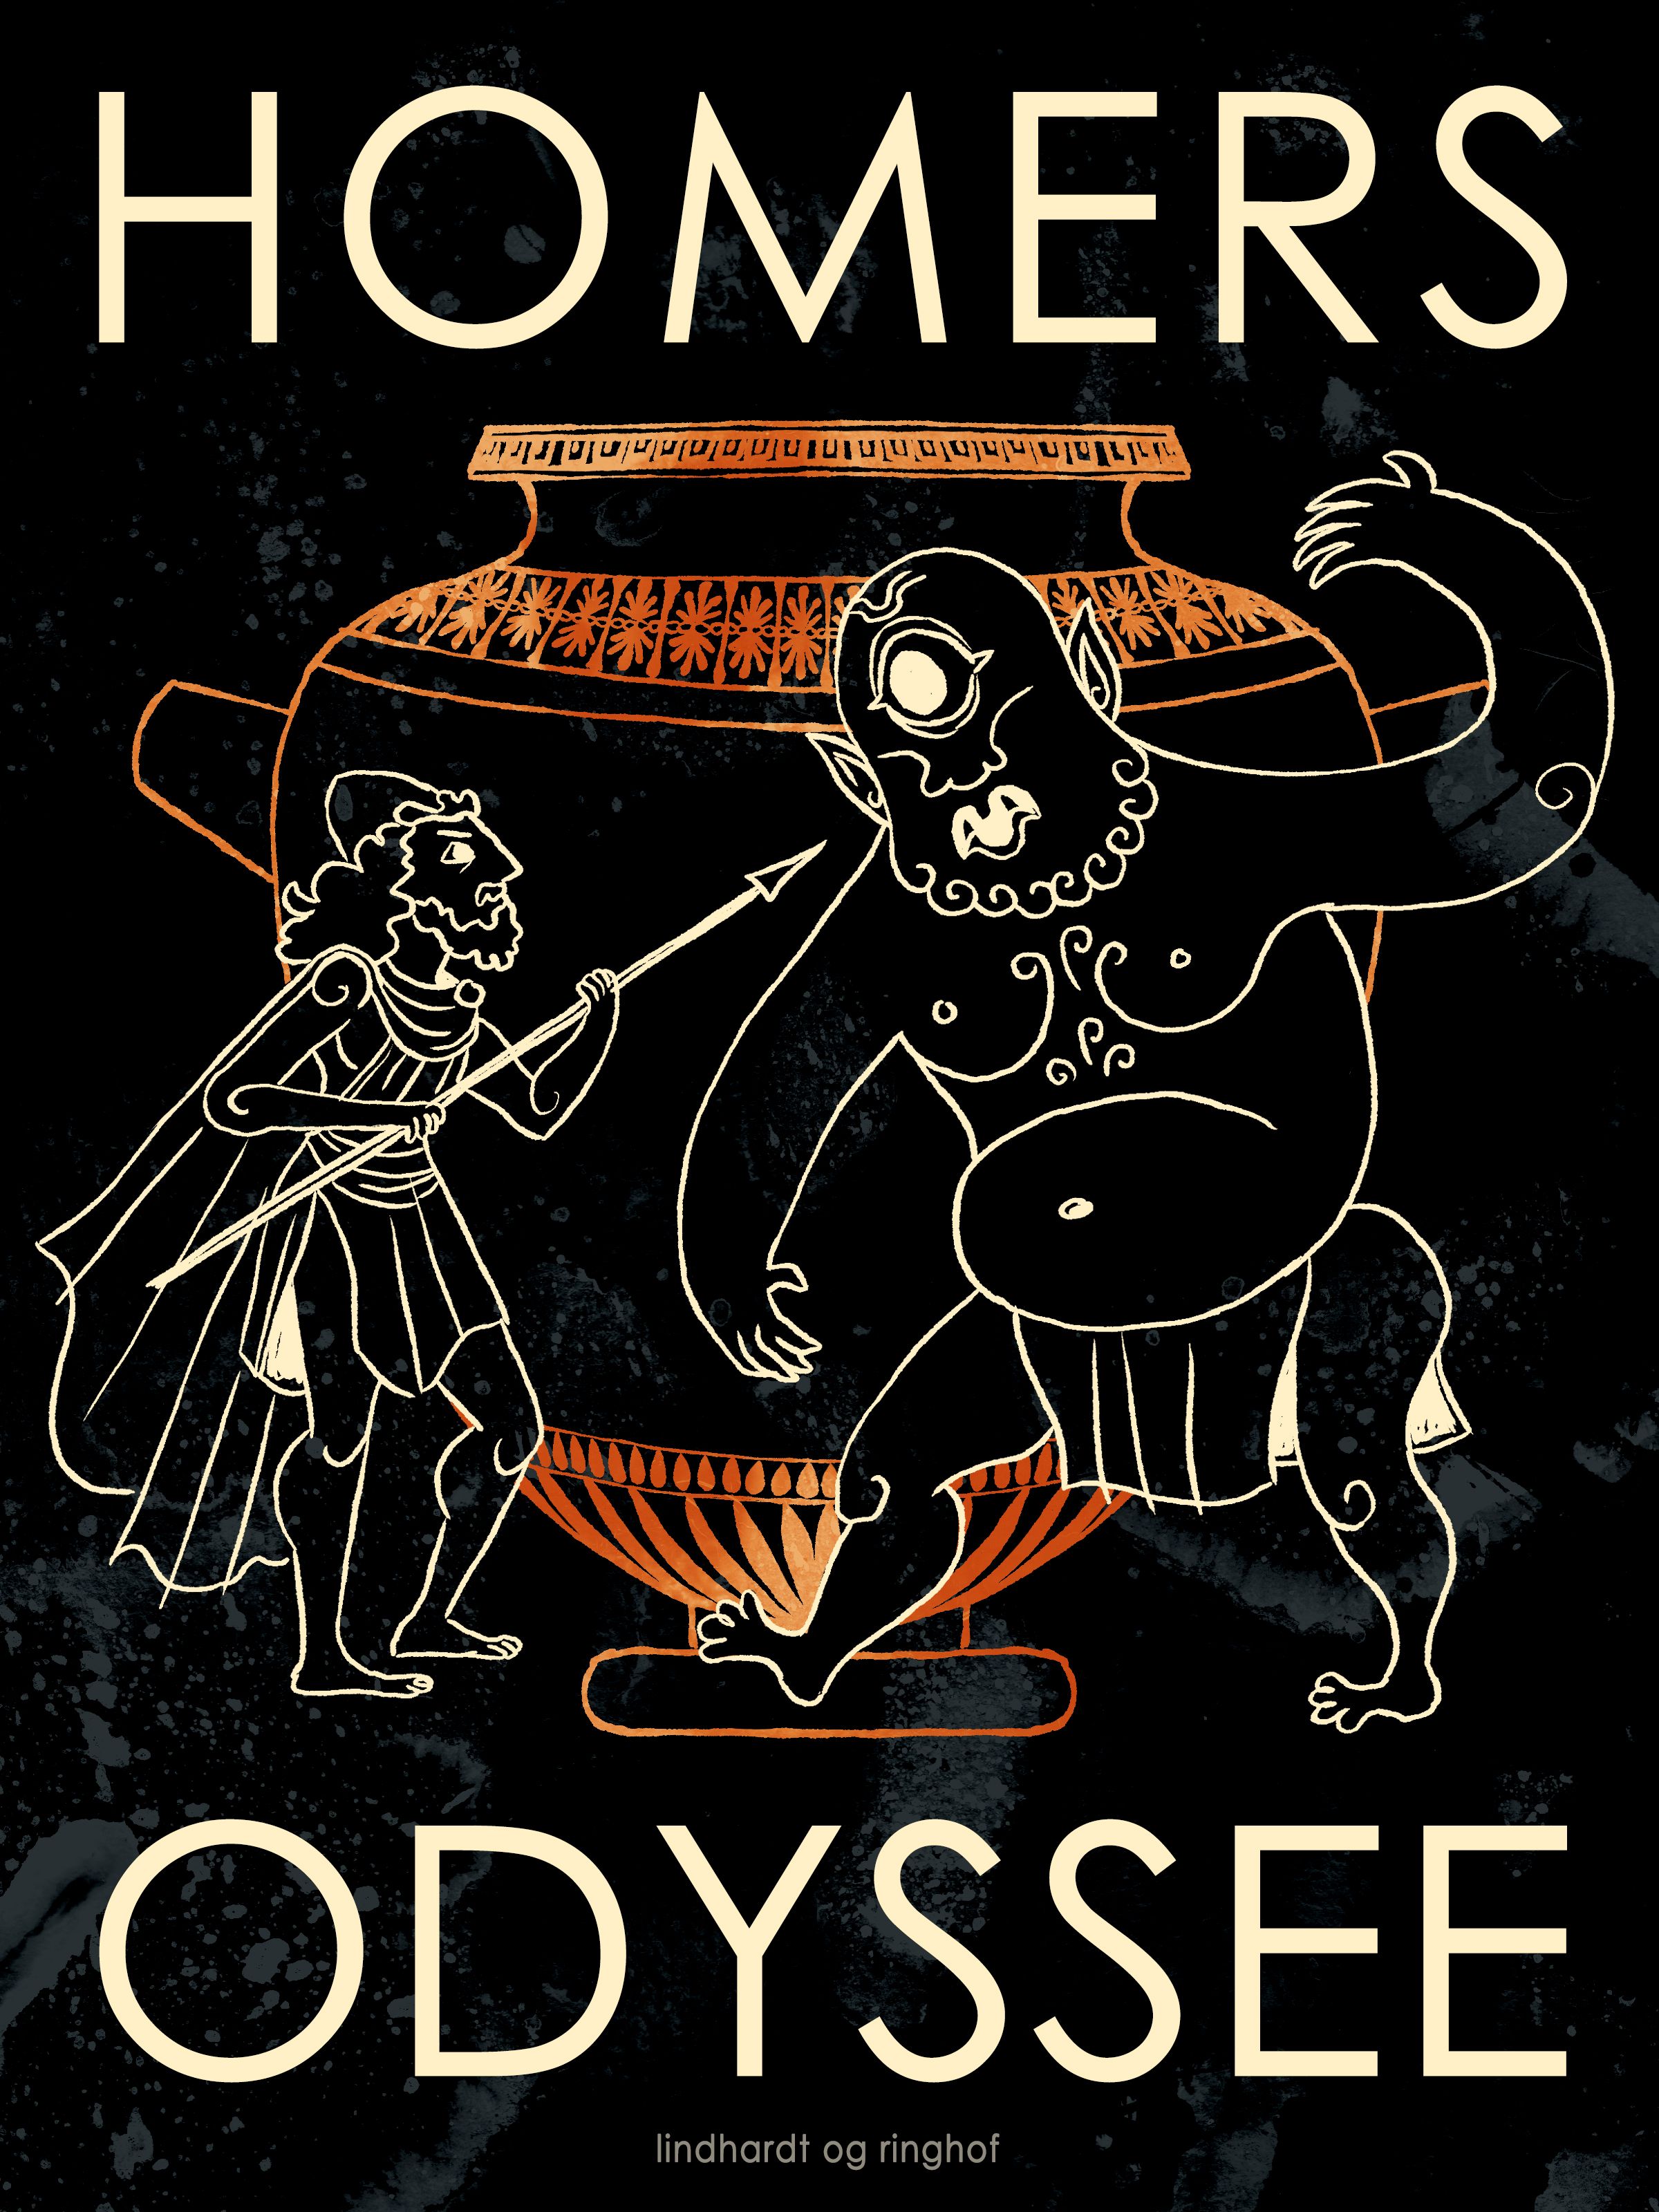 Homers Odyssee, e-bok av Homer